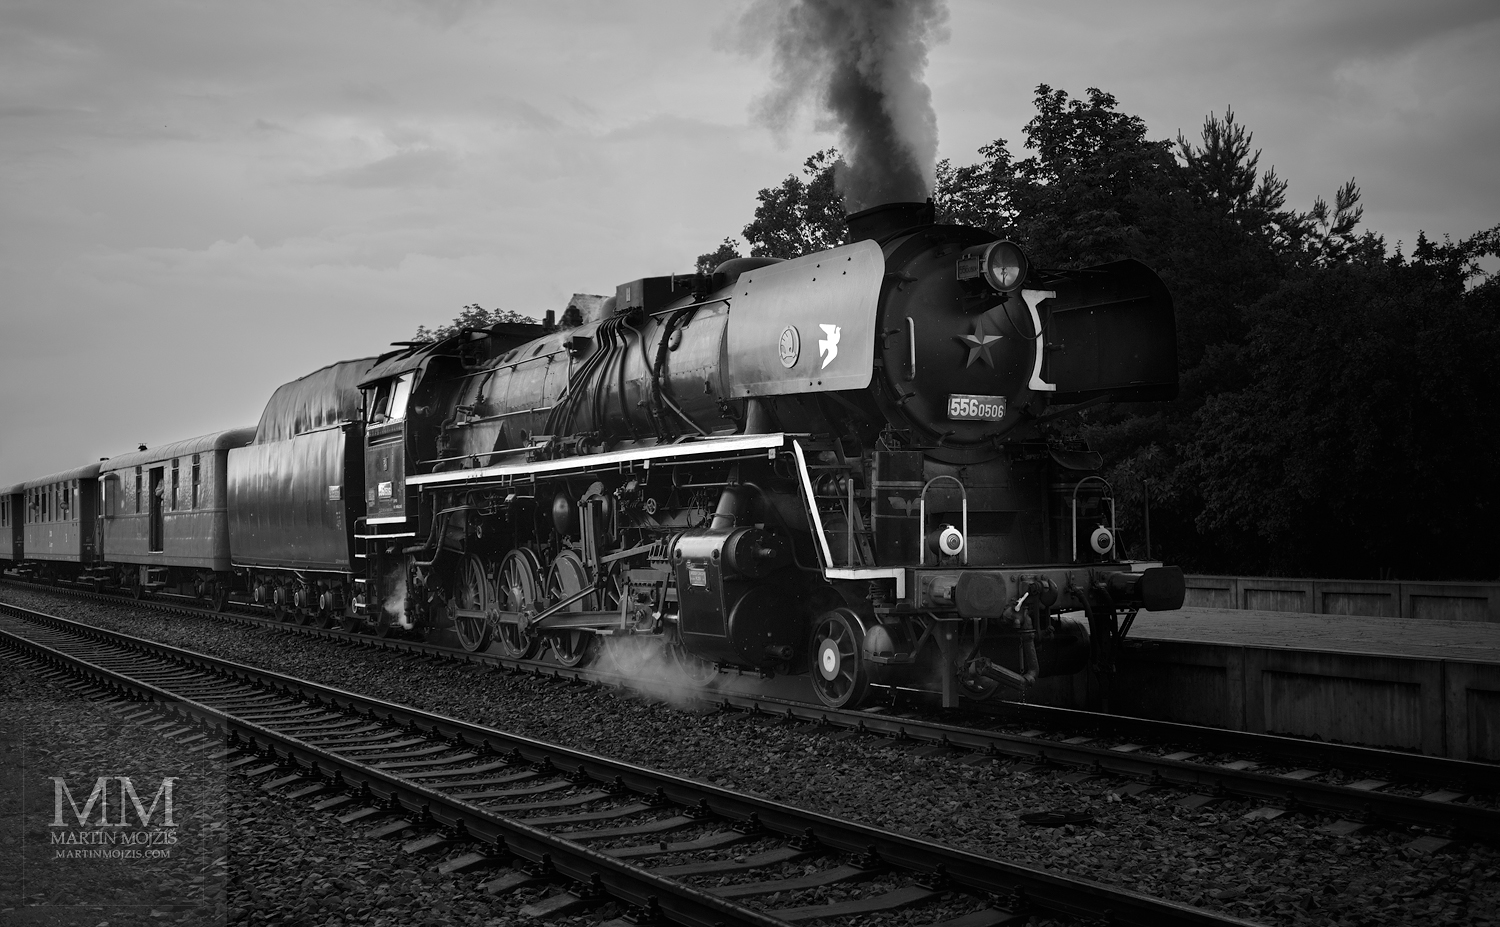 Velkoformátová umělecká fotografie parní lokomotivy č. 556 0506 v čele osobního vlaku. Martin Mojžíš.